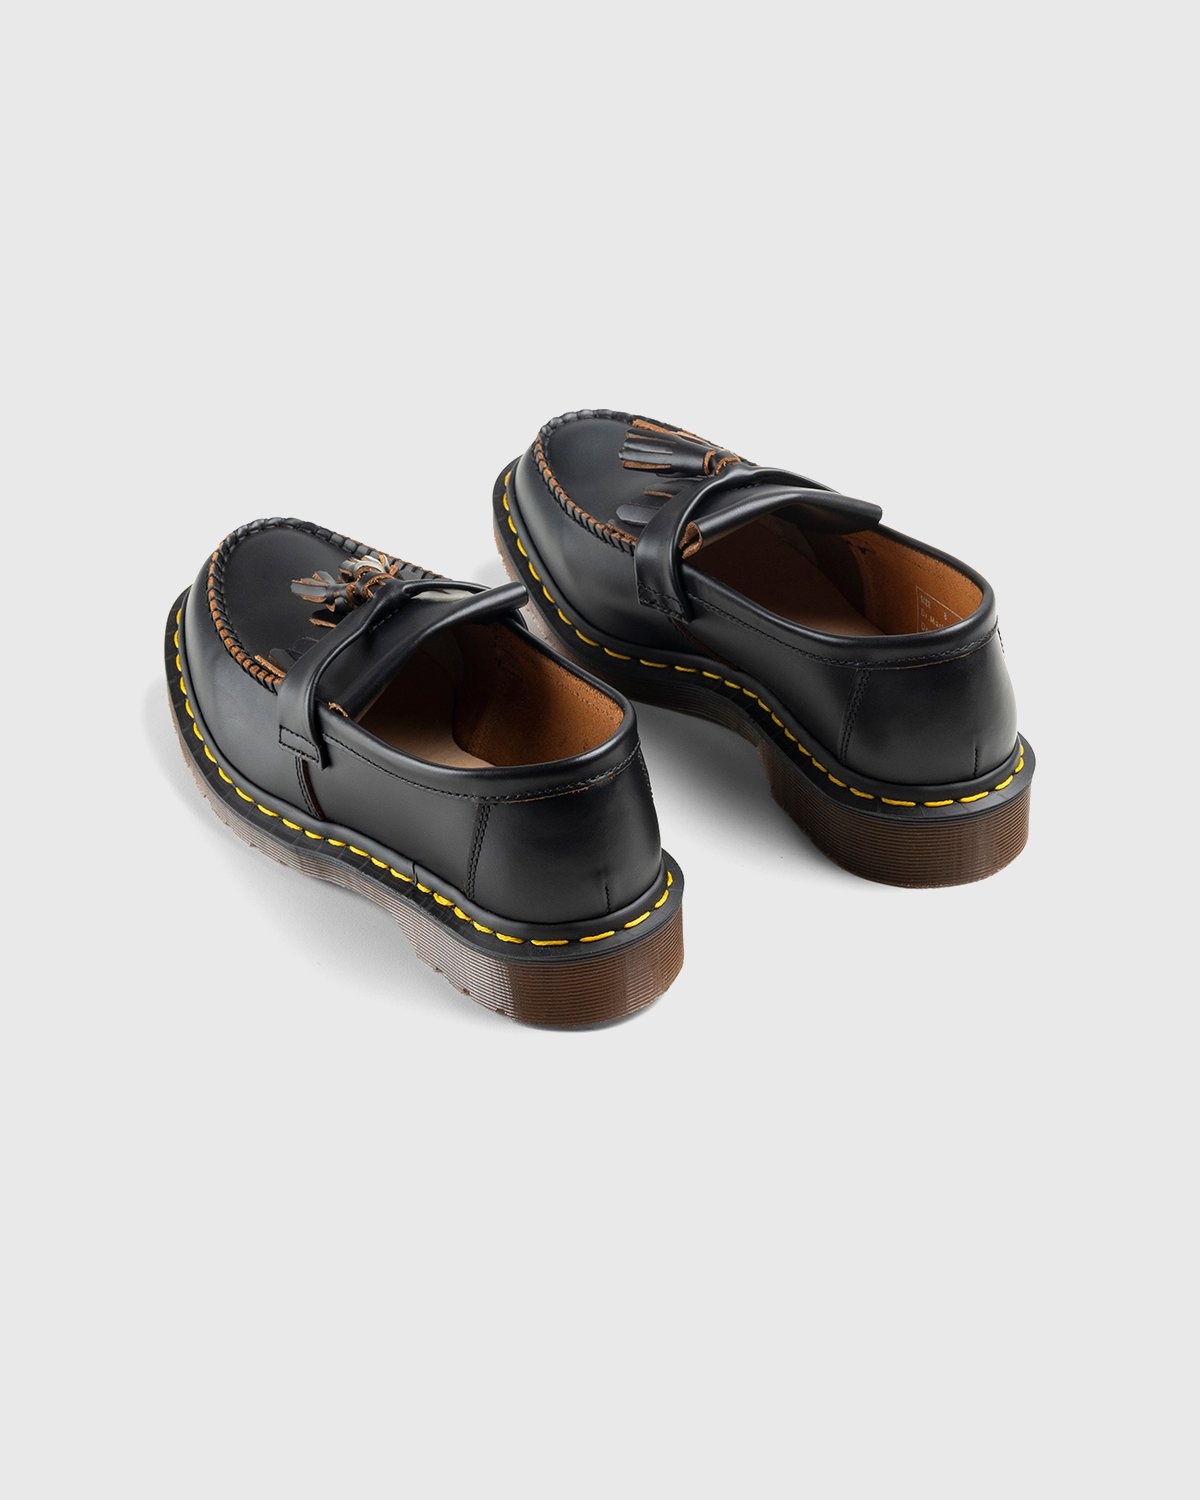 Dr. Martens – Adrian Black Quilon - Shoes - Black - Image 4